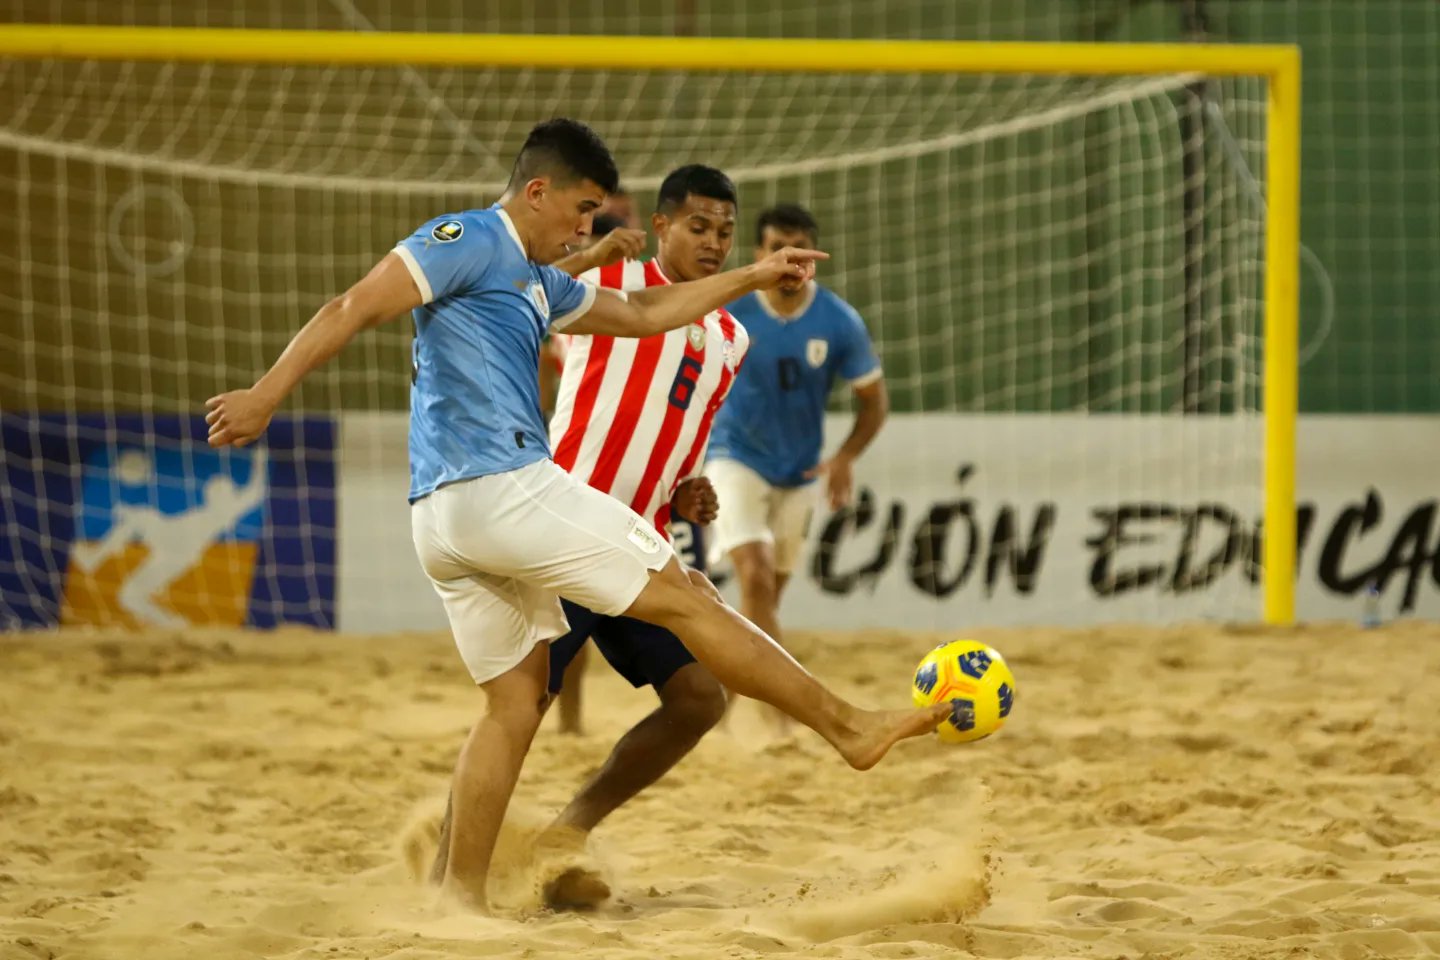 Comenzó el curso de CONMEBOL de Fútbol Playa - AUF